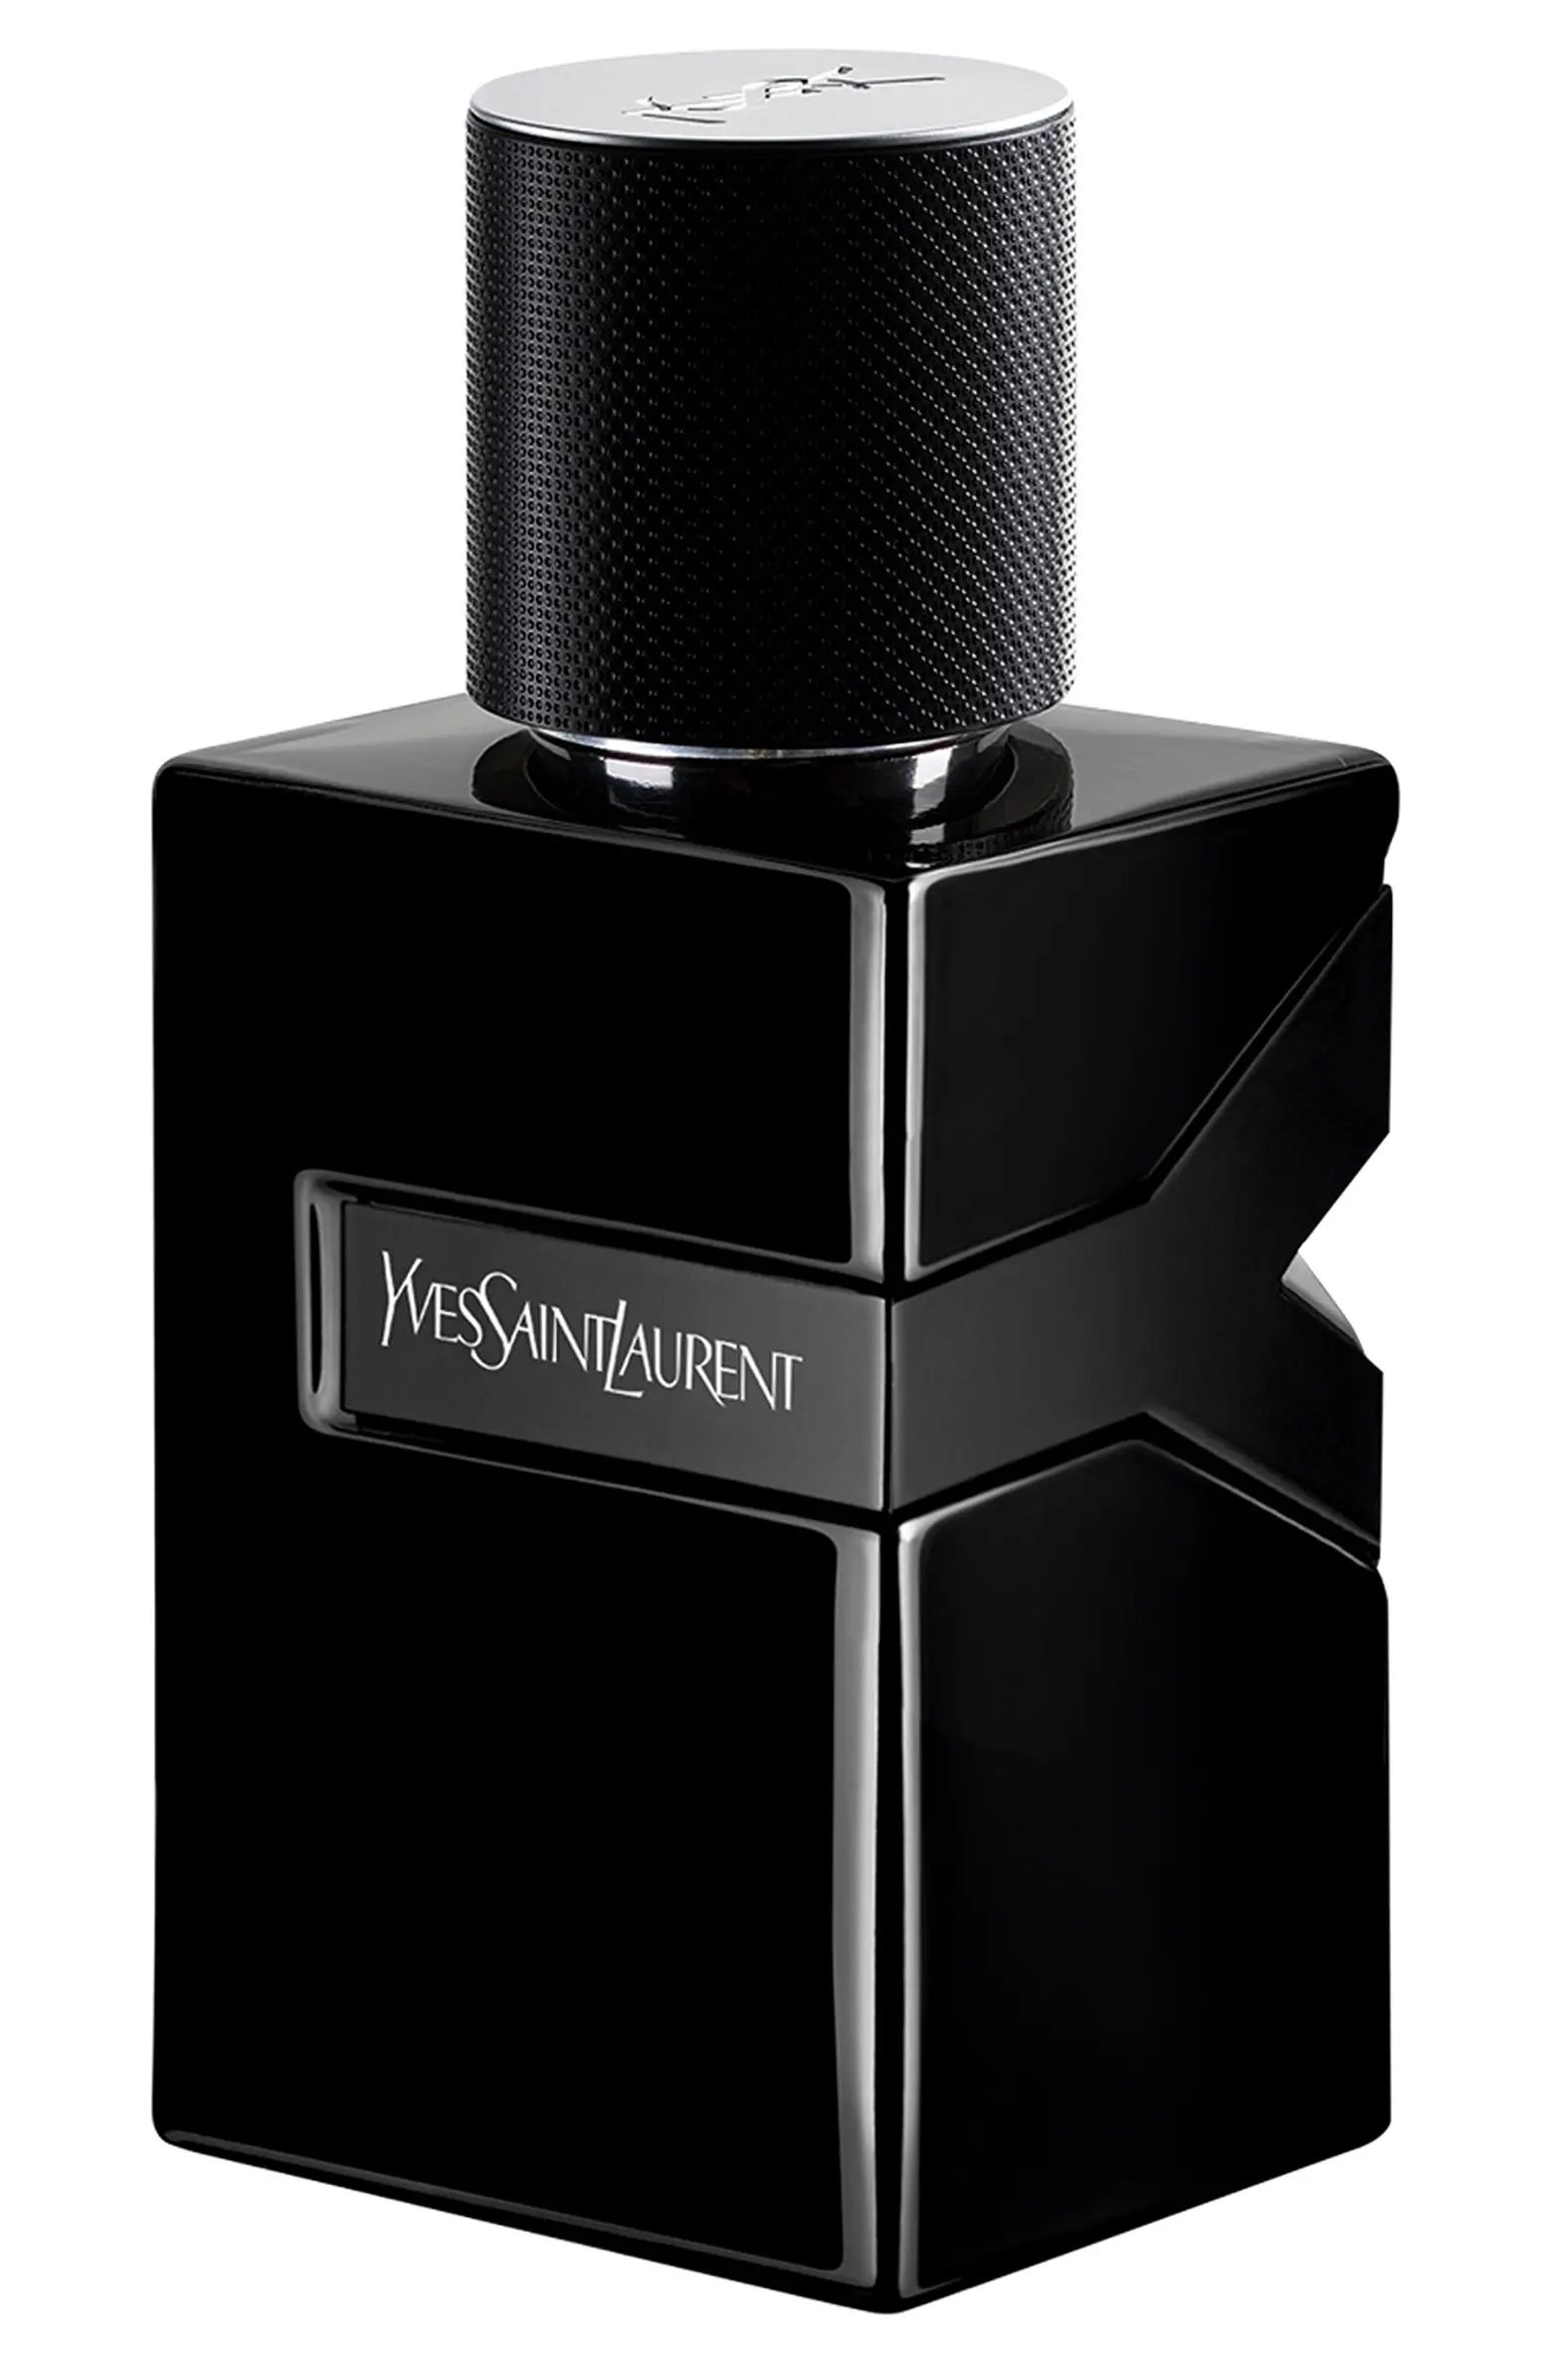 Y Le Parfum | Nordstrom Canada